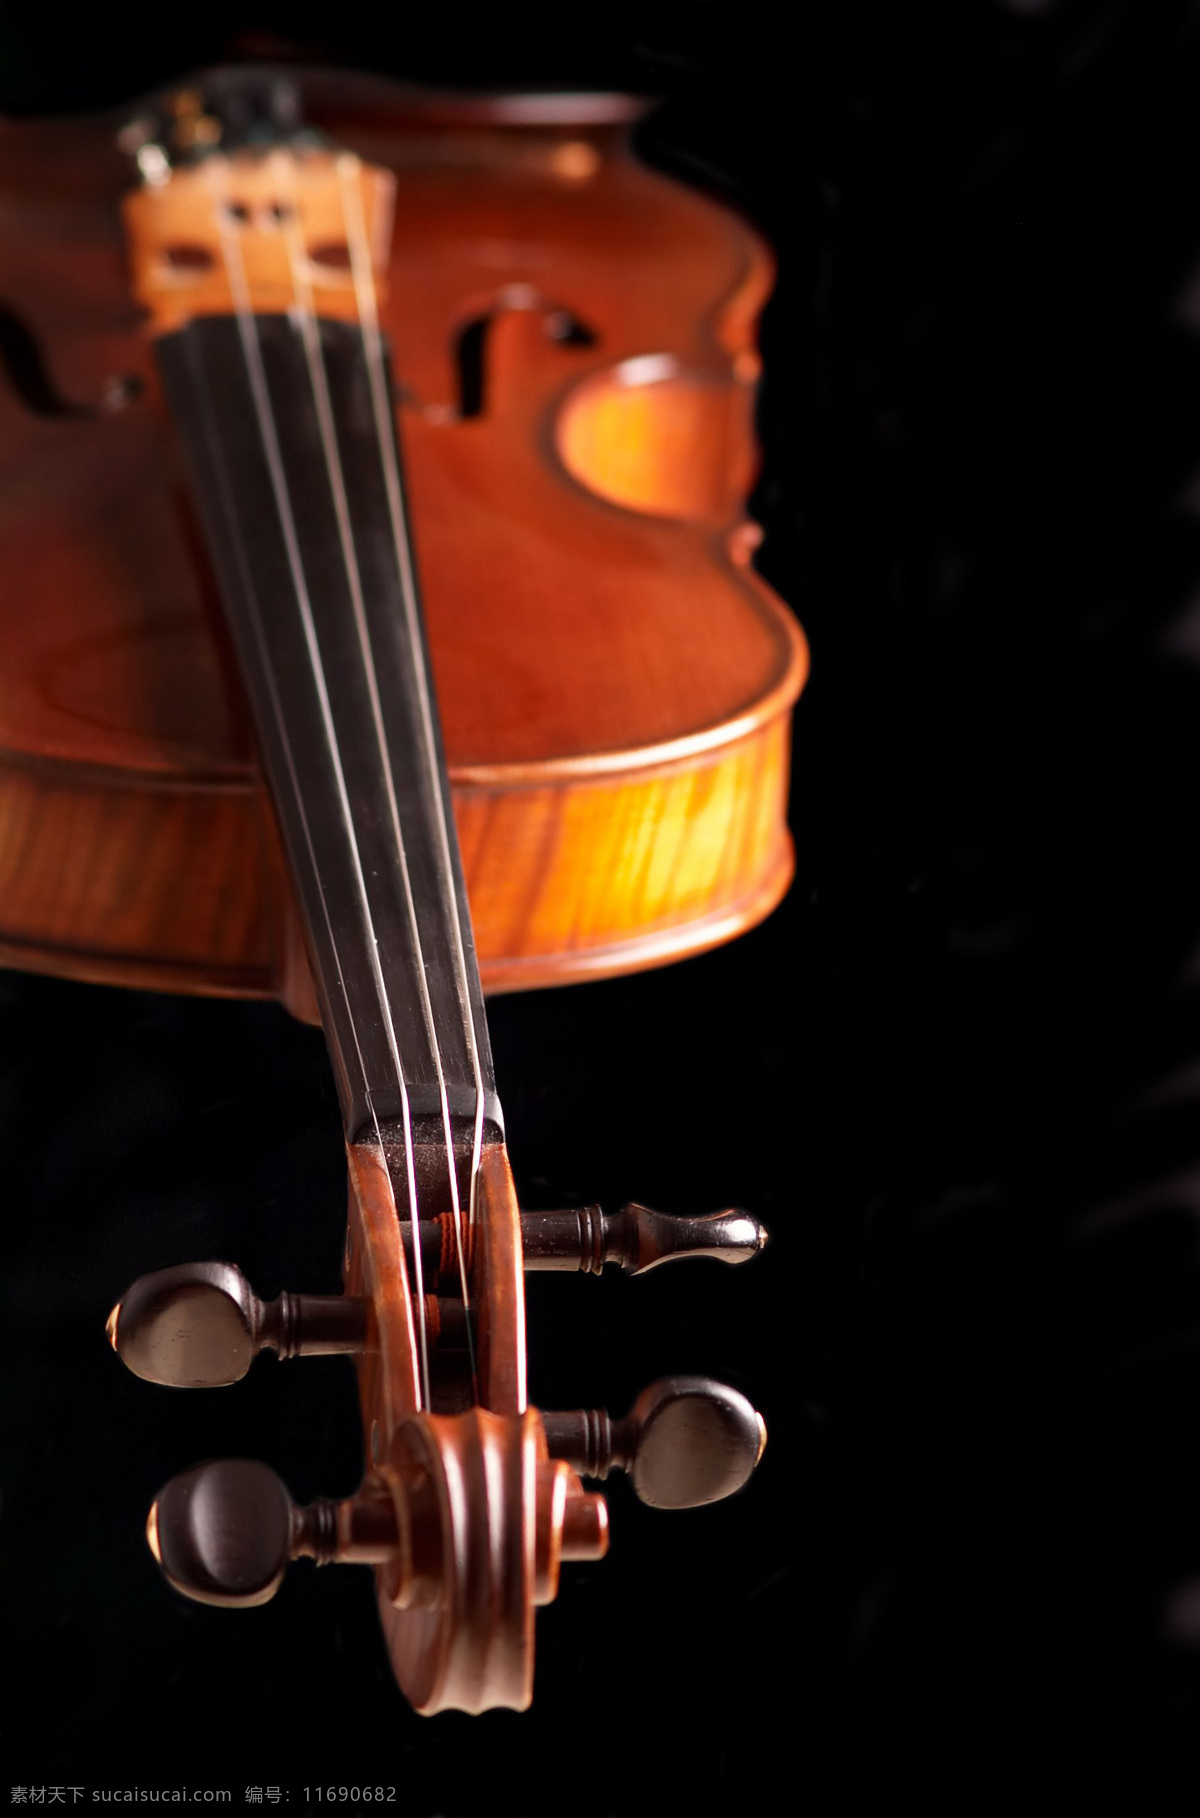 大提琴 音乐 艺术 乐器 弦乐器 小提琴 文化艺术 舞蹈音乐 摄影图库